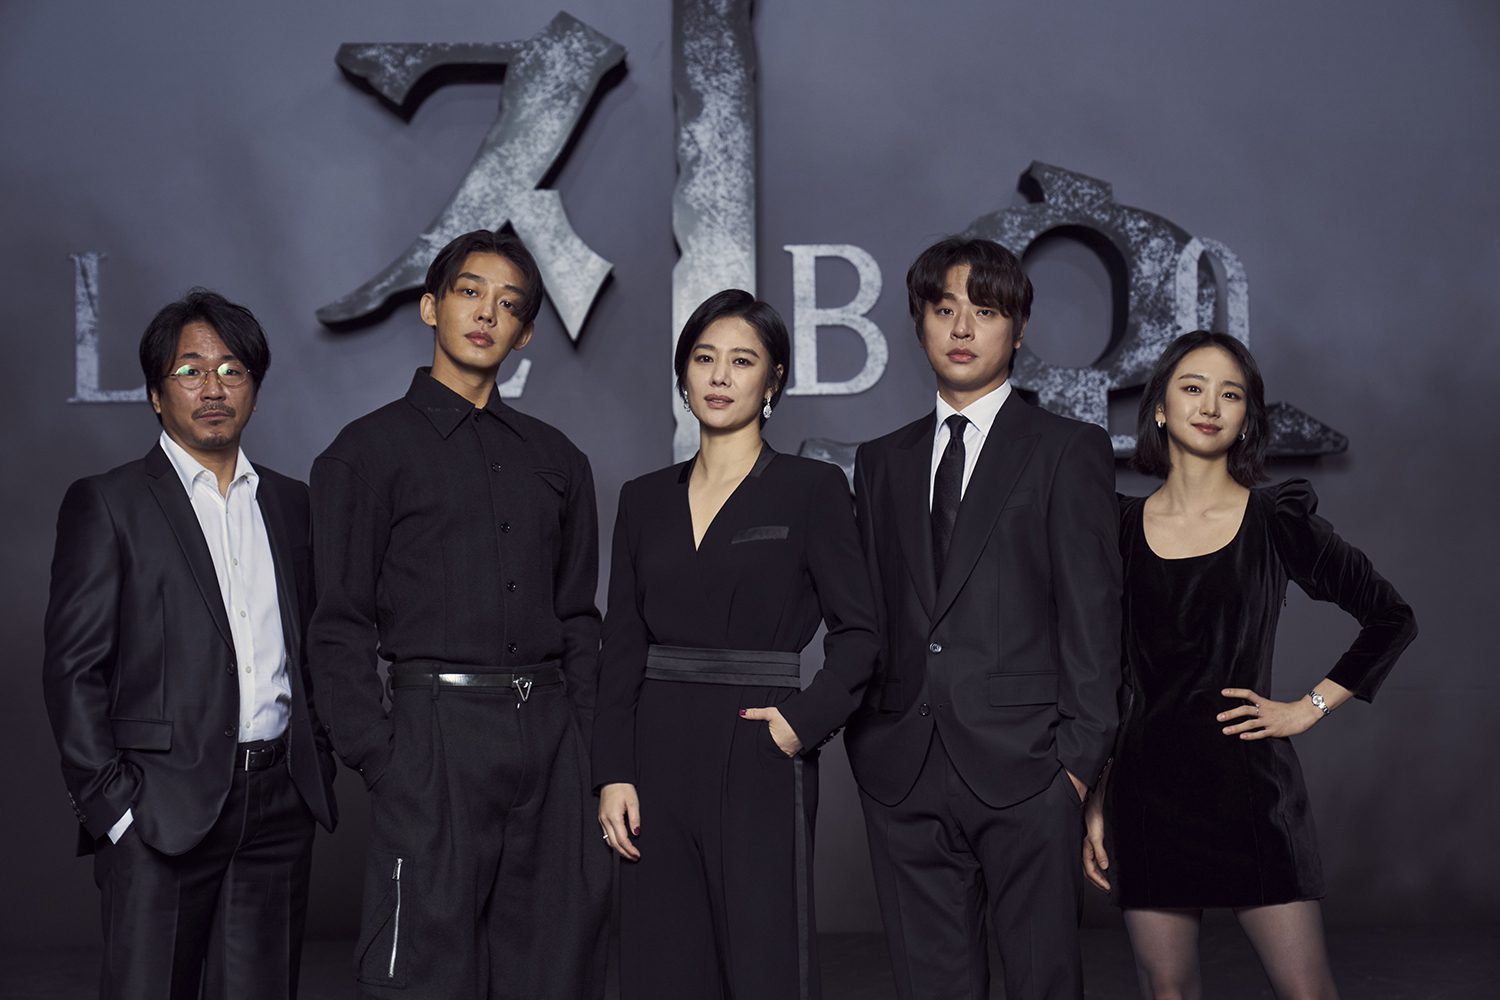 Phim mới của Park Jung Min: Bản án từ địa ngục - Hellbound (2021)